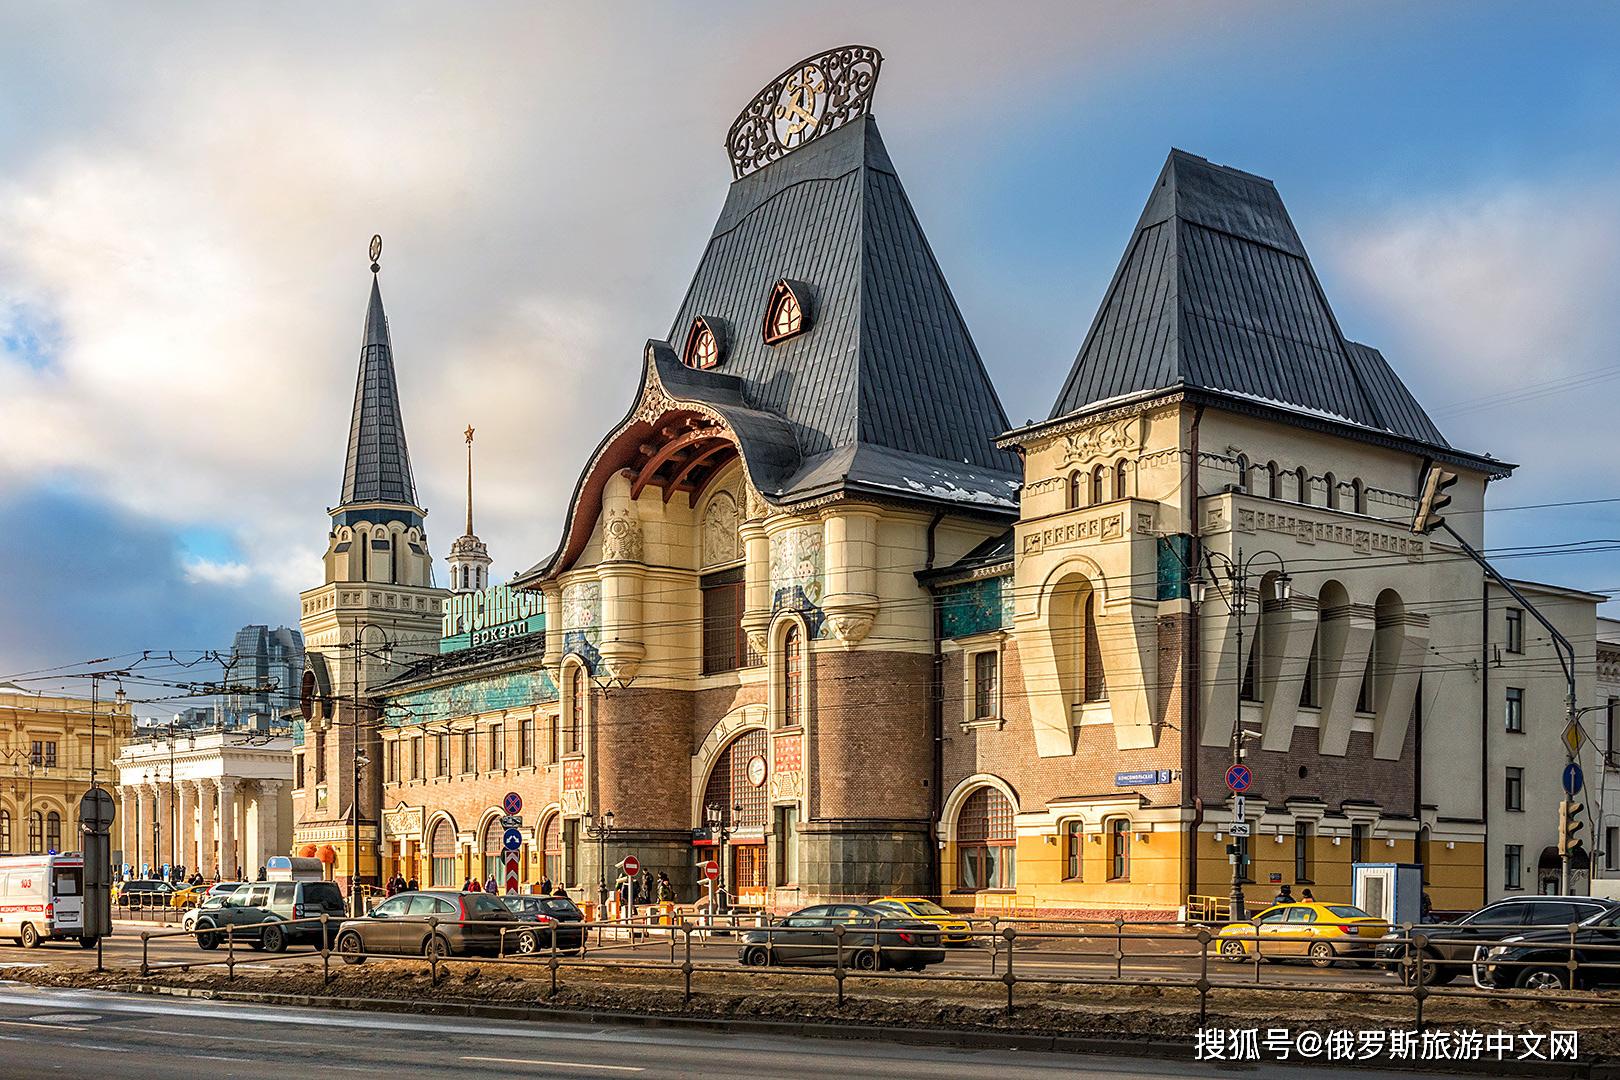 是独具特色的新俄罗斯风格火车站,莫斯科纪念性建筑物的杰作